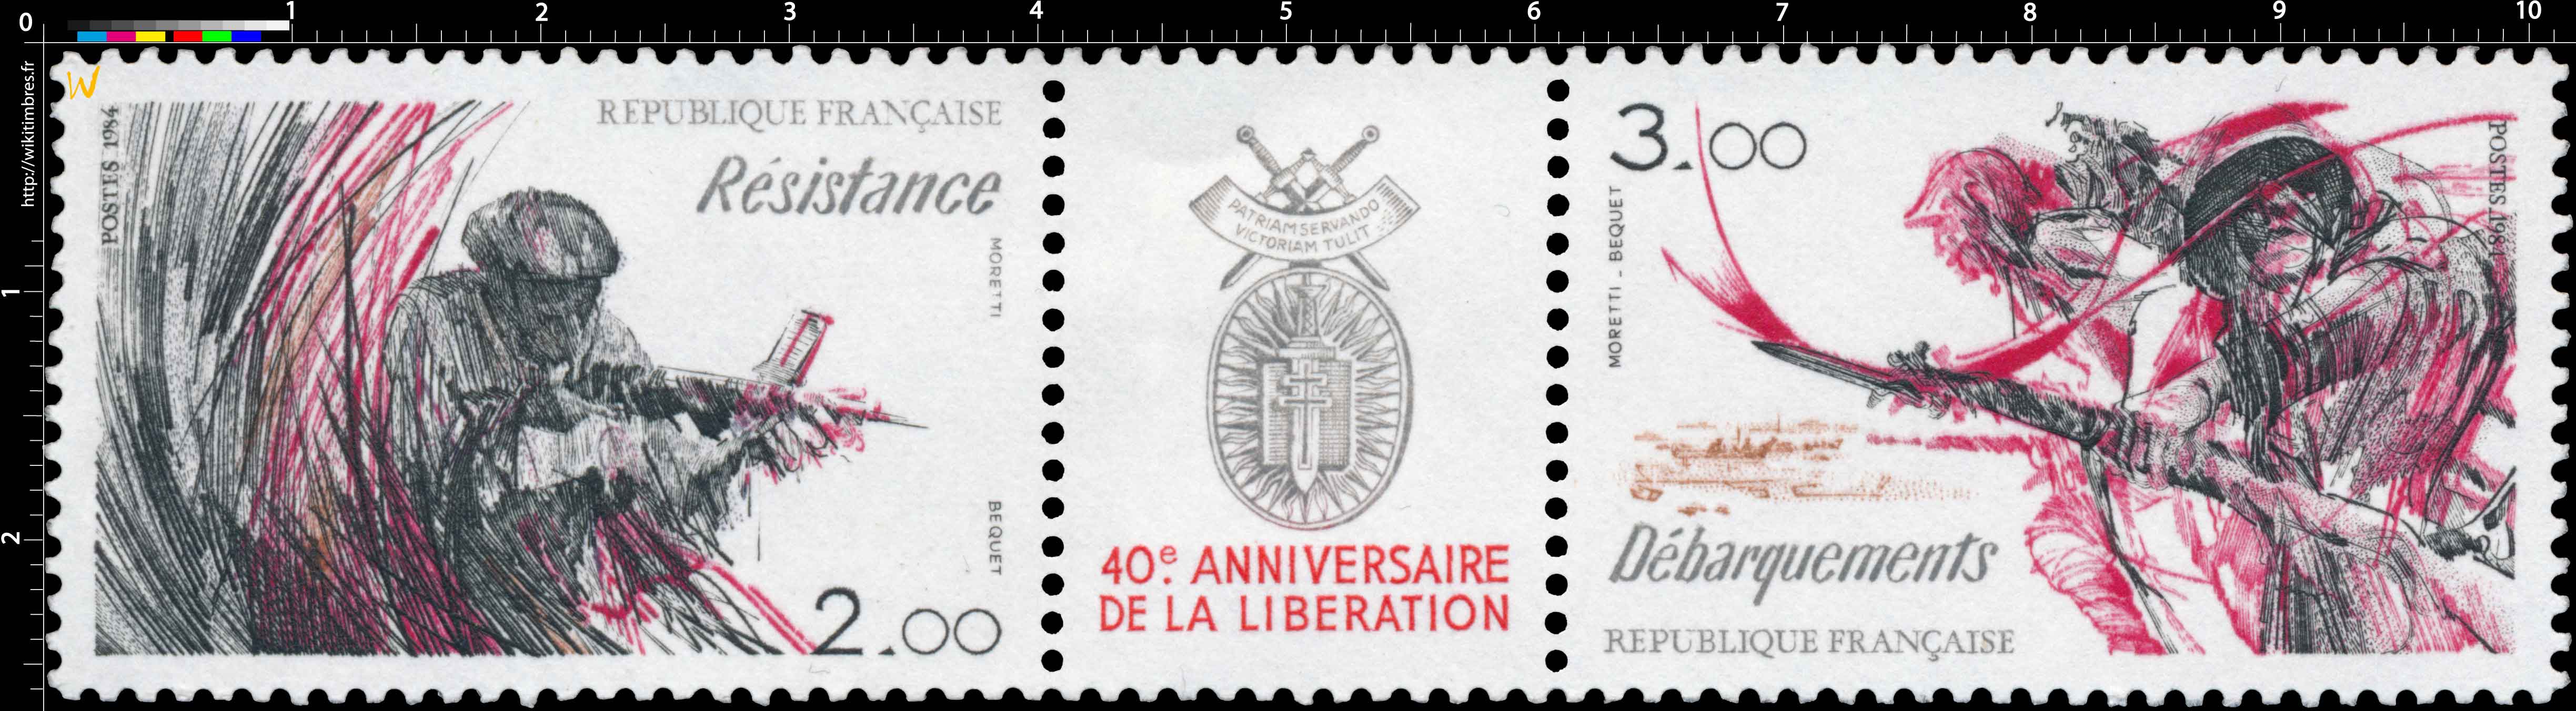 40e ANNIVERSAIRE DE LA LIBÉRATION